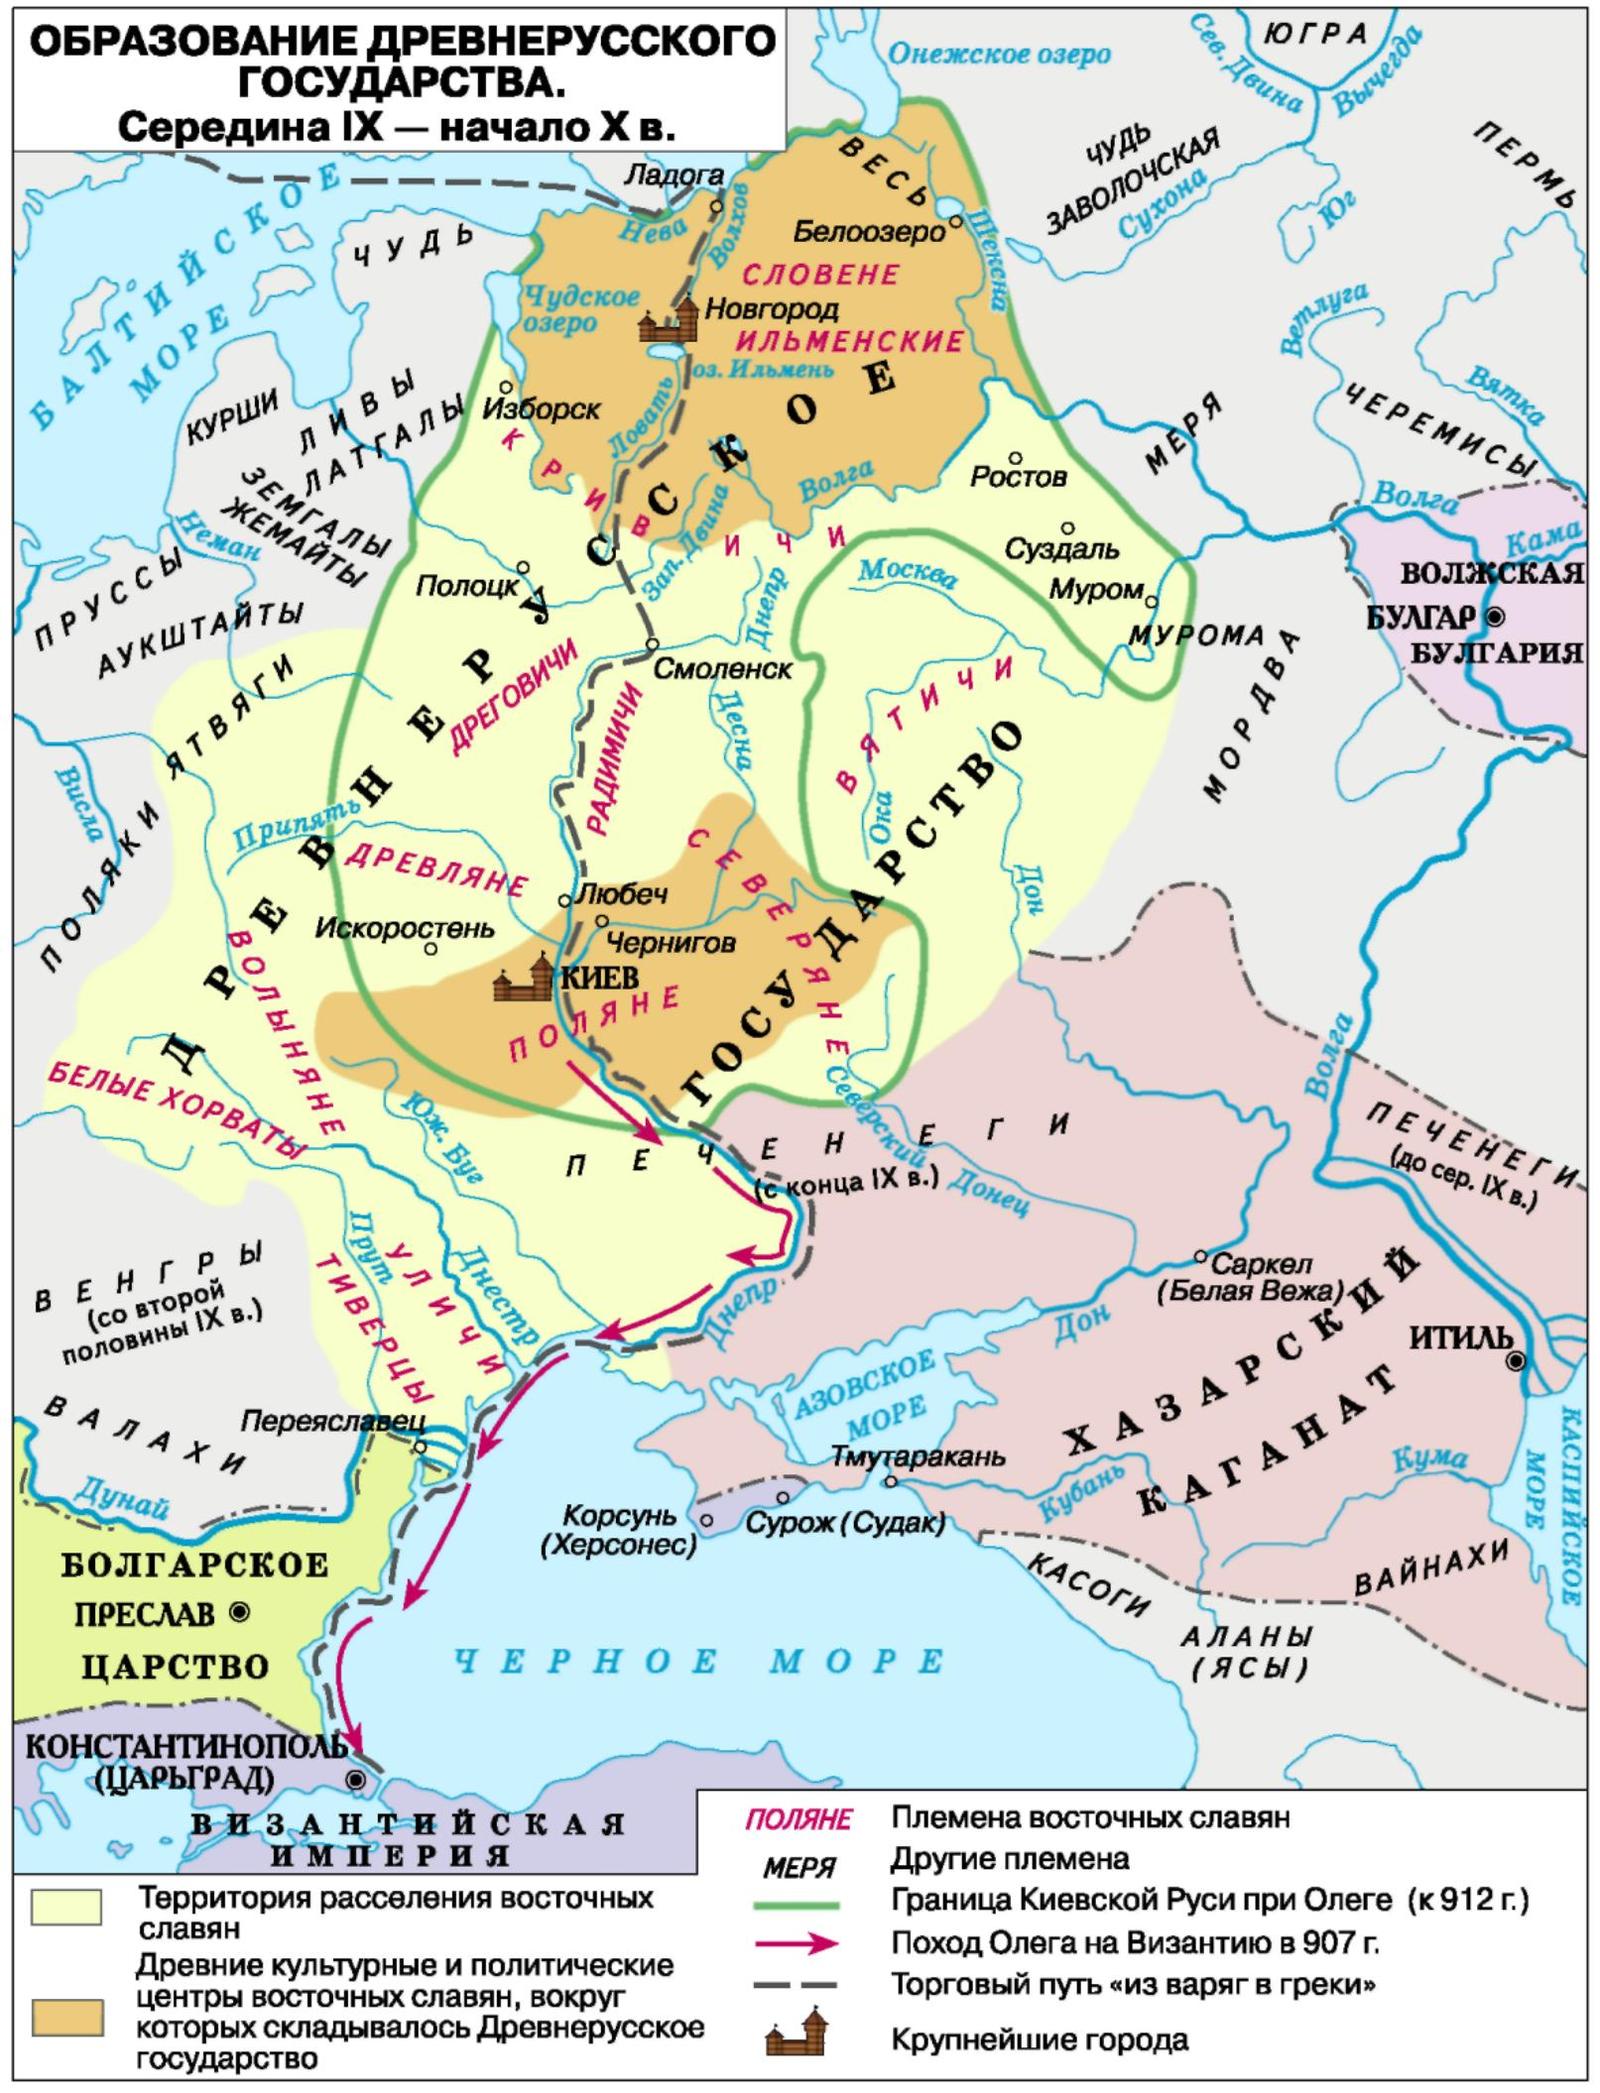 Объединение Киева и Новгорода князем Олегом (882 г.)